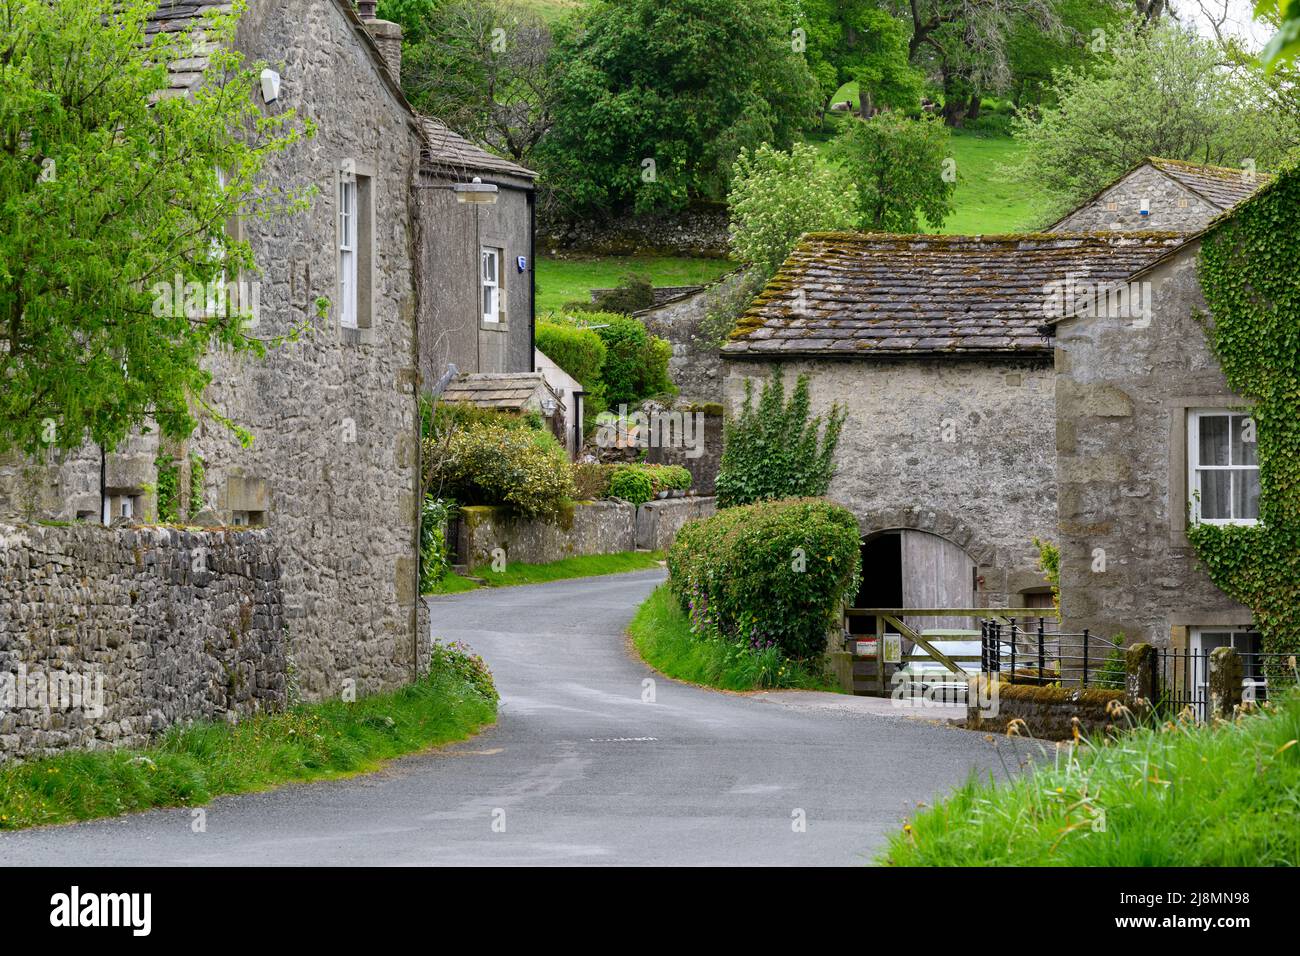 Village calme de Conistone (bâtiments en pierre attrayants, champs verts sur une pente abrupte de vallée, route sinueuse) - Wharfedale, Yorkshire Dales, Angleterre, Royaume-Uni. Banque D'Images